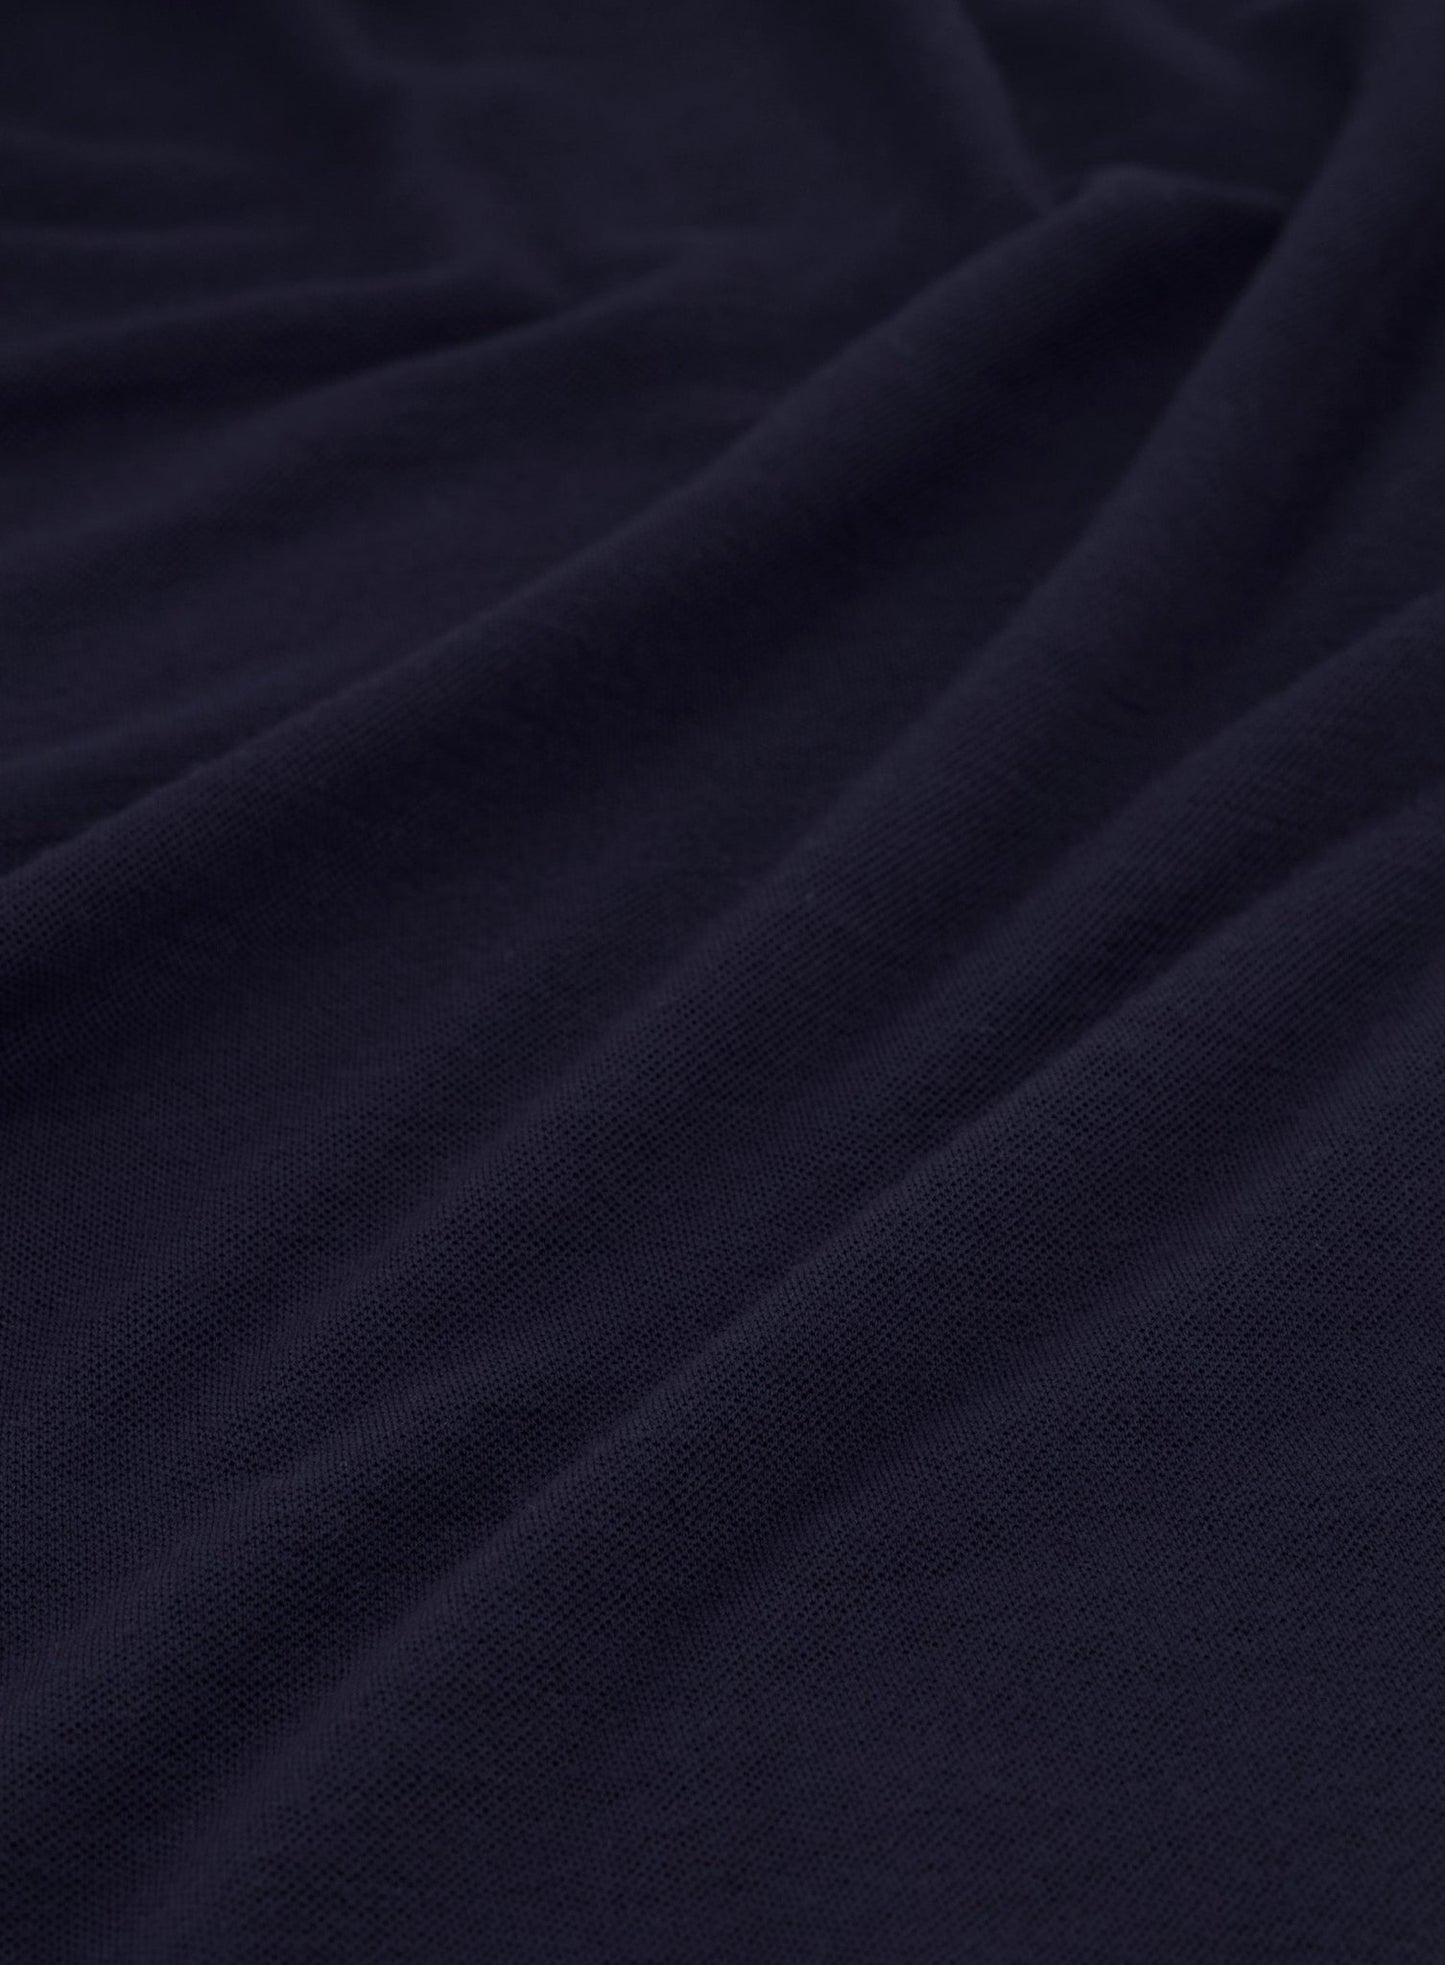 Poloshirt met lange mouwen van wol | BLUE NAVY